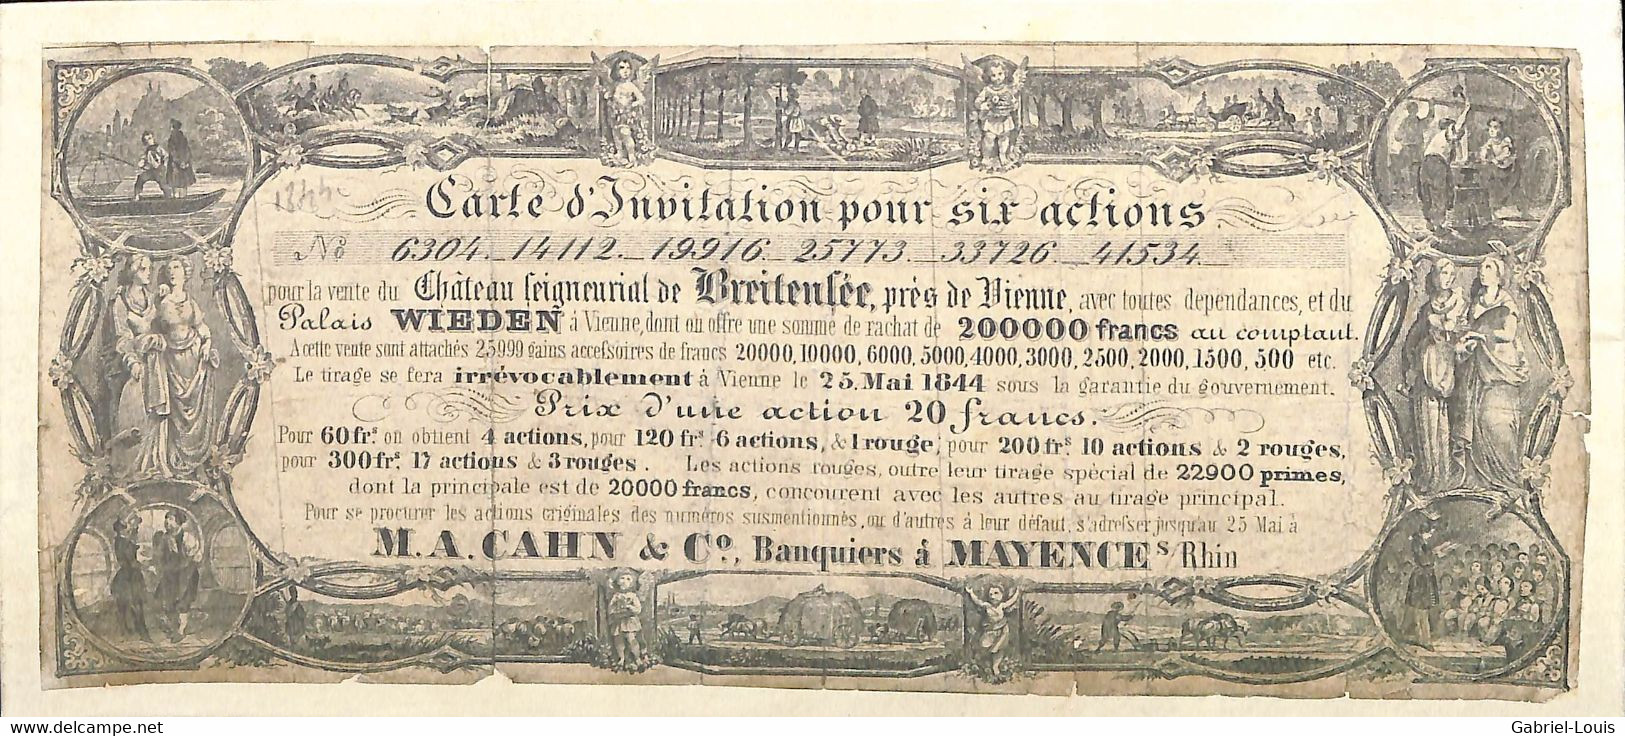 Carte D'invitation Pour Six Actions Vente Du Château De Breitensée Wien Palais Wieden Östereich Banque Mayence 1844 - Non Classificati